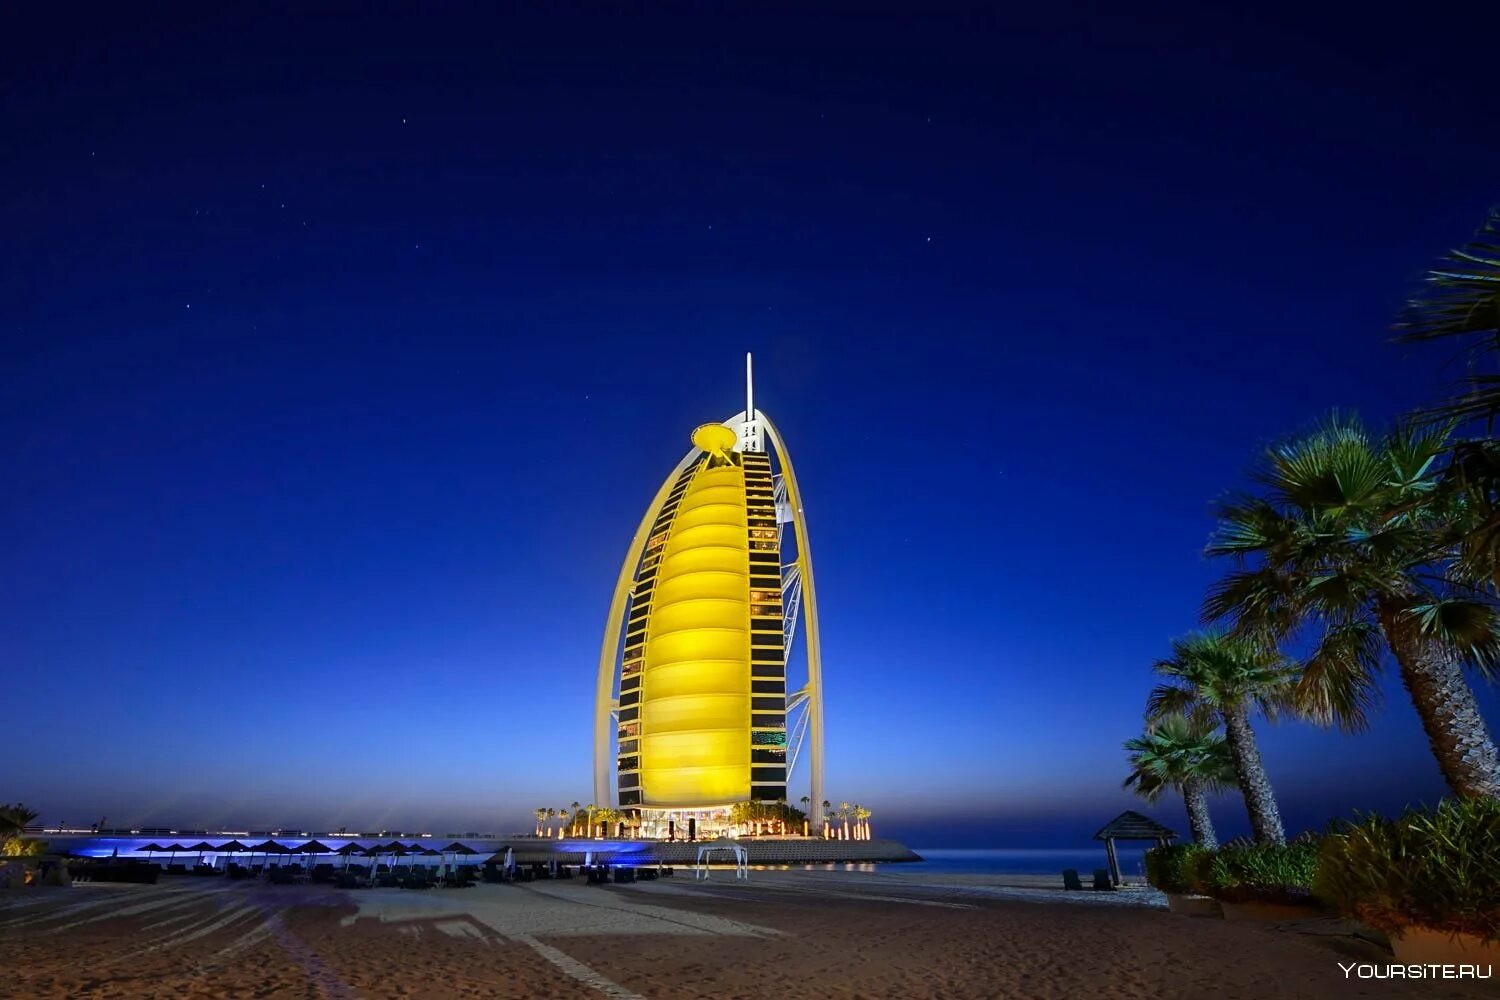 Аль араб. Отель Бурдж-Эль-араб, Дубаи. Отель Парус в Дубае. Отель Бурдж-Эль-араб («арабская башня») в Дубае, ОАЭ. Гостиница Парус Дубай.